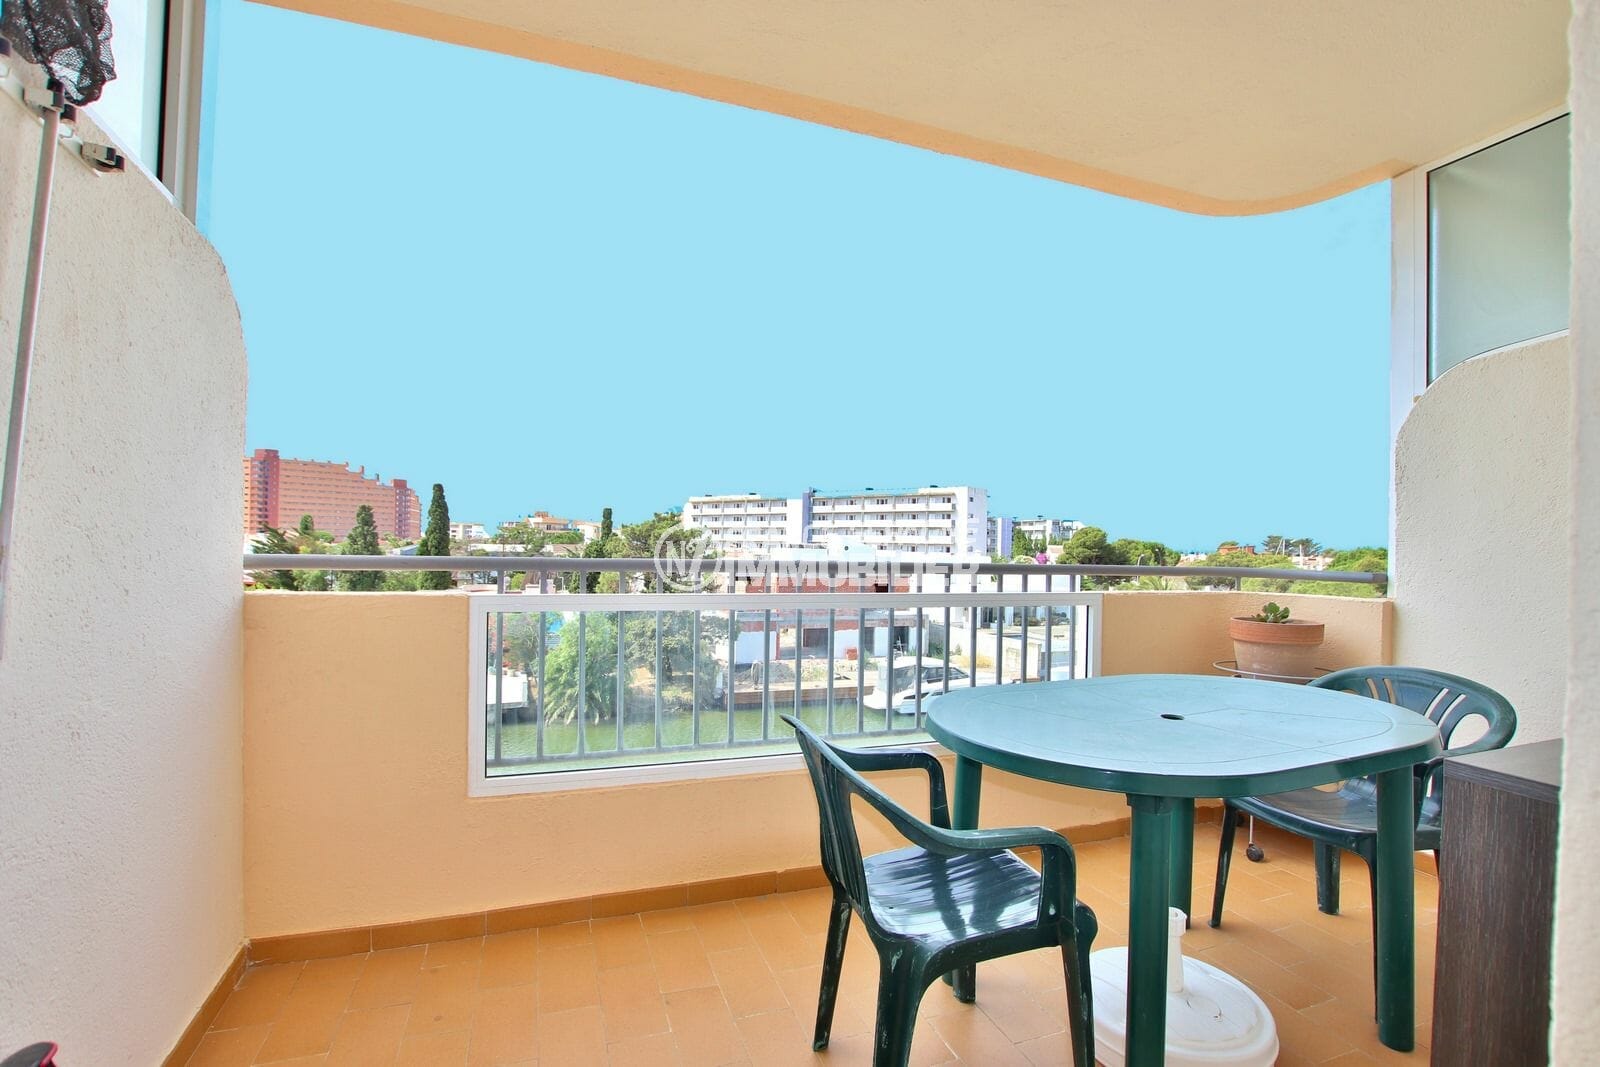 vente appartement rosas, studio 37 m² avec terrasse vue canal, au pied des commerces. plage à 800 m